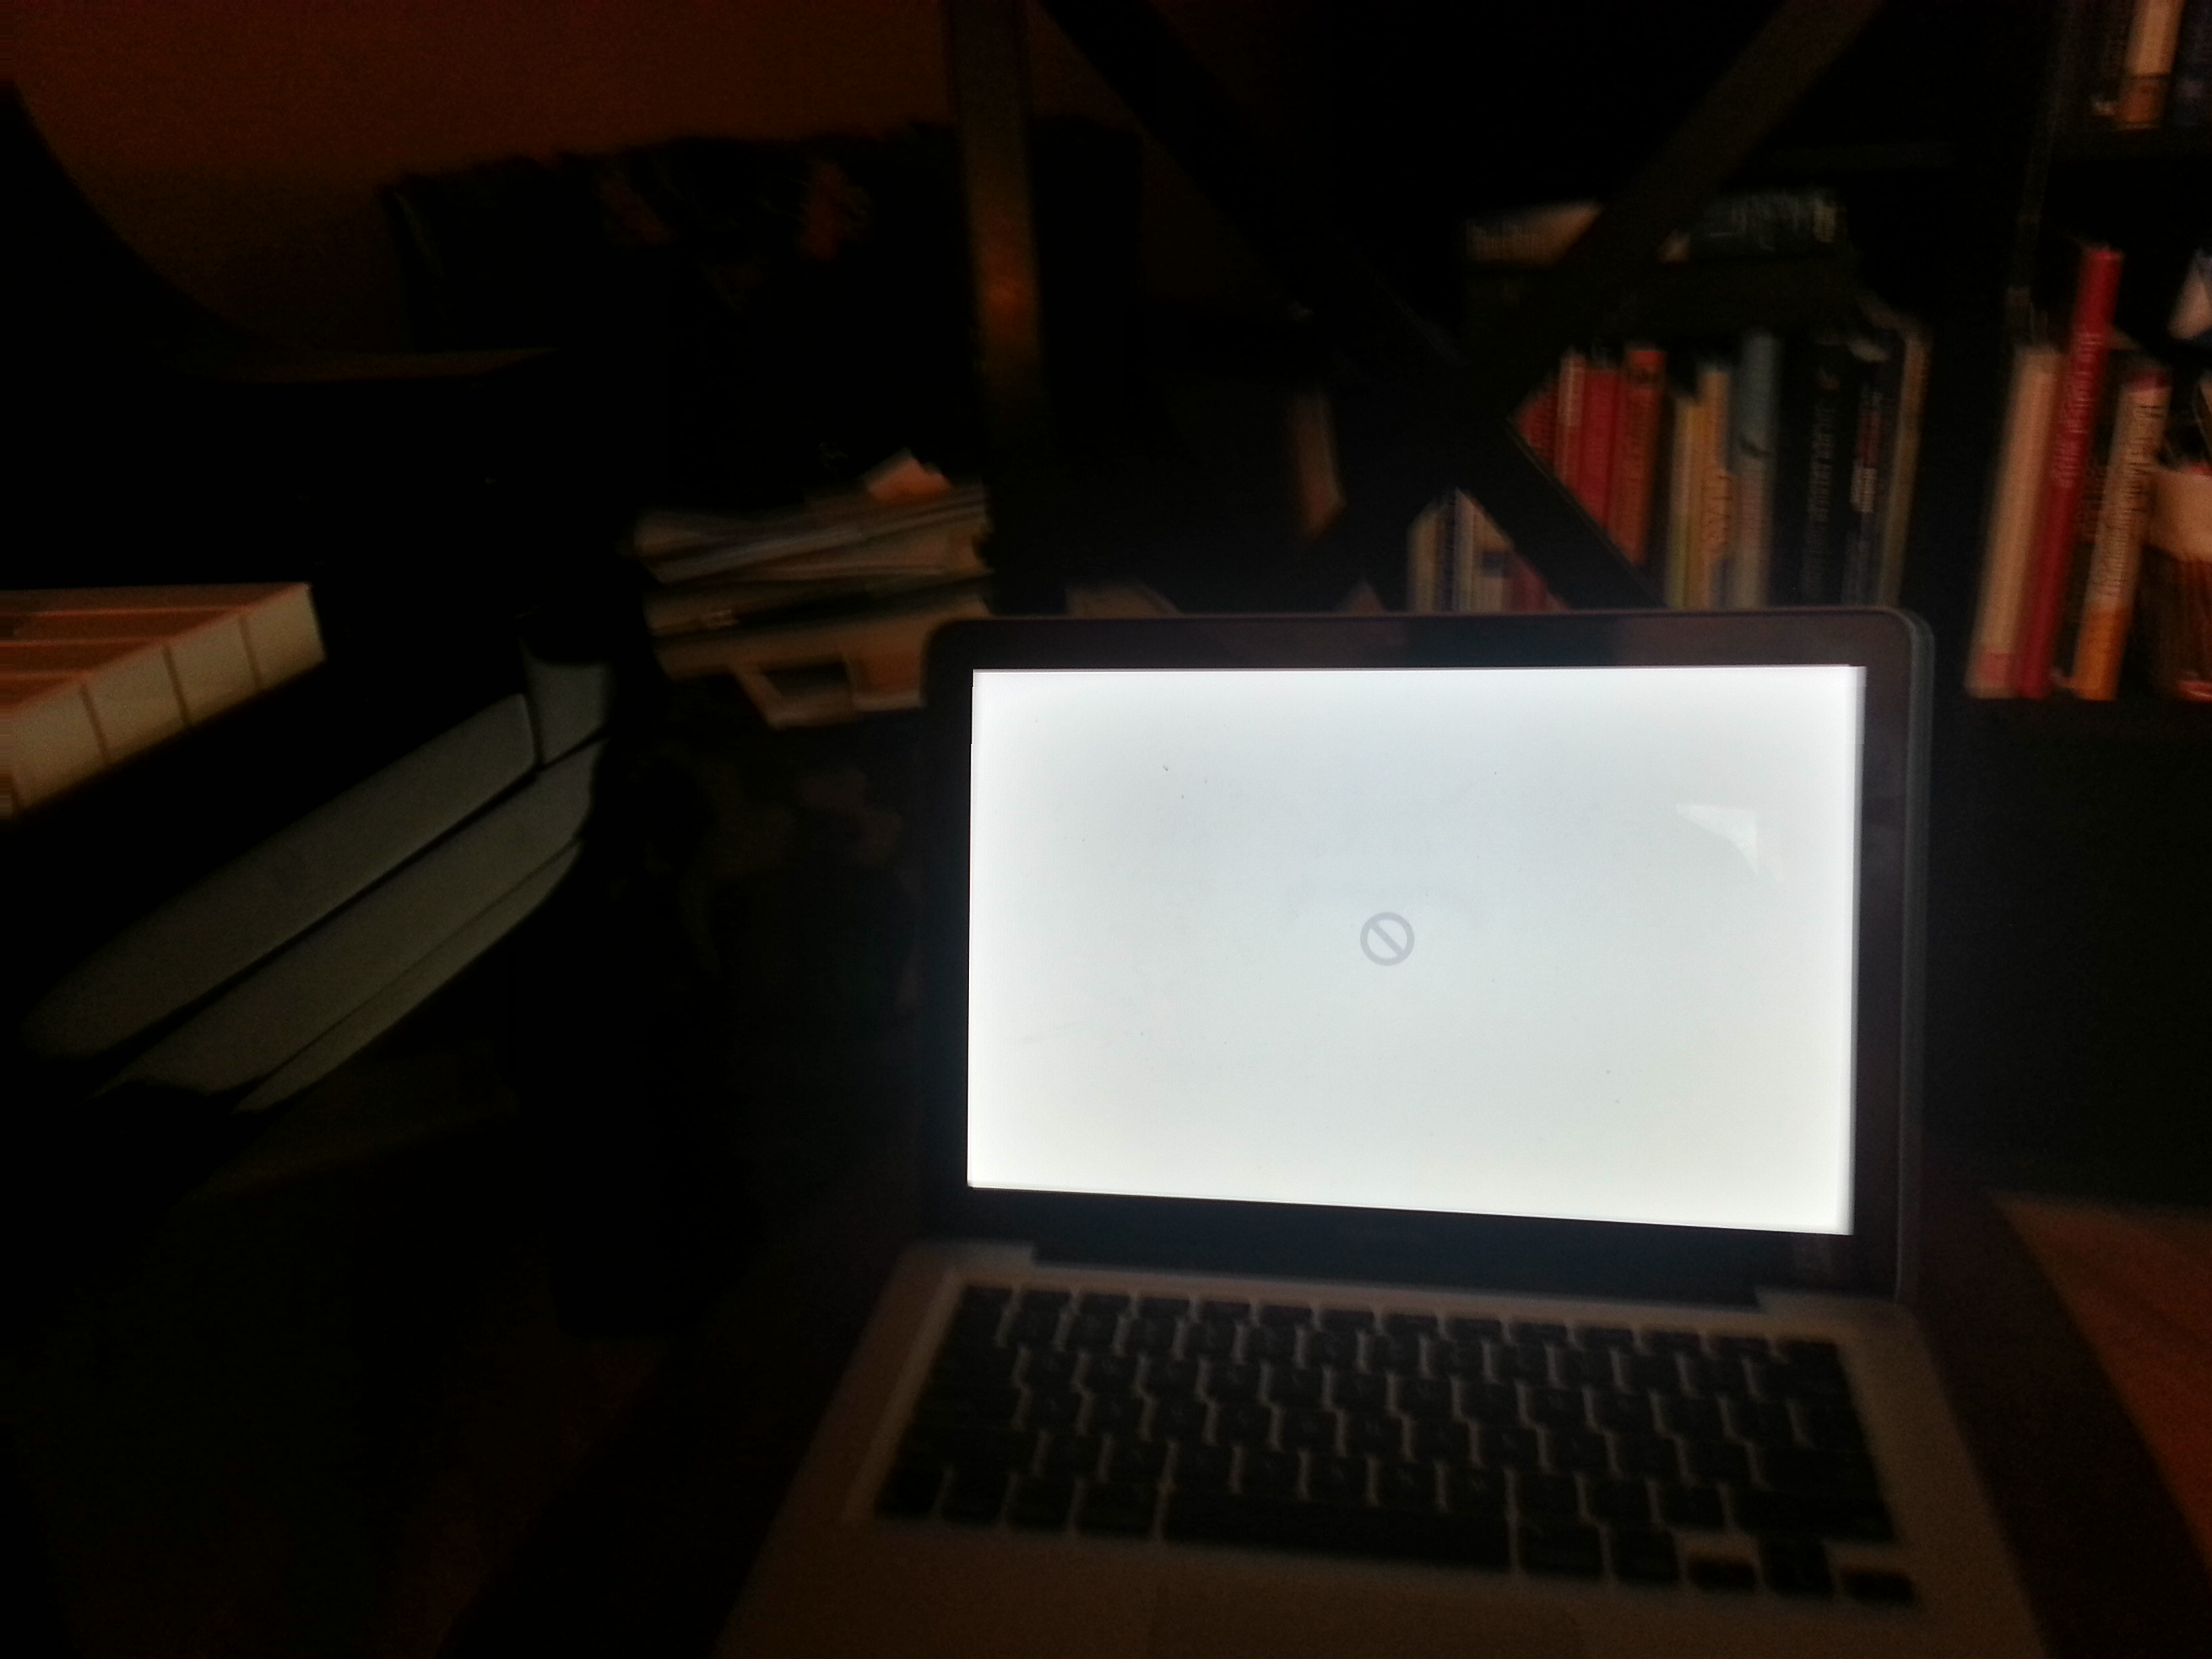 Macbook Pro stuck in boot loop - Apple Community